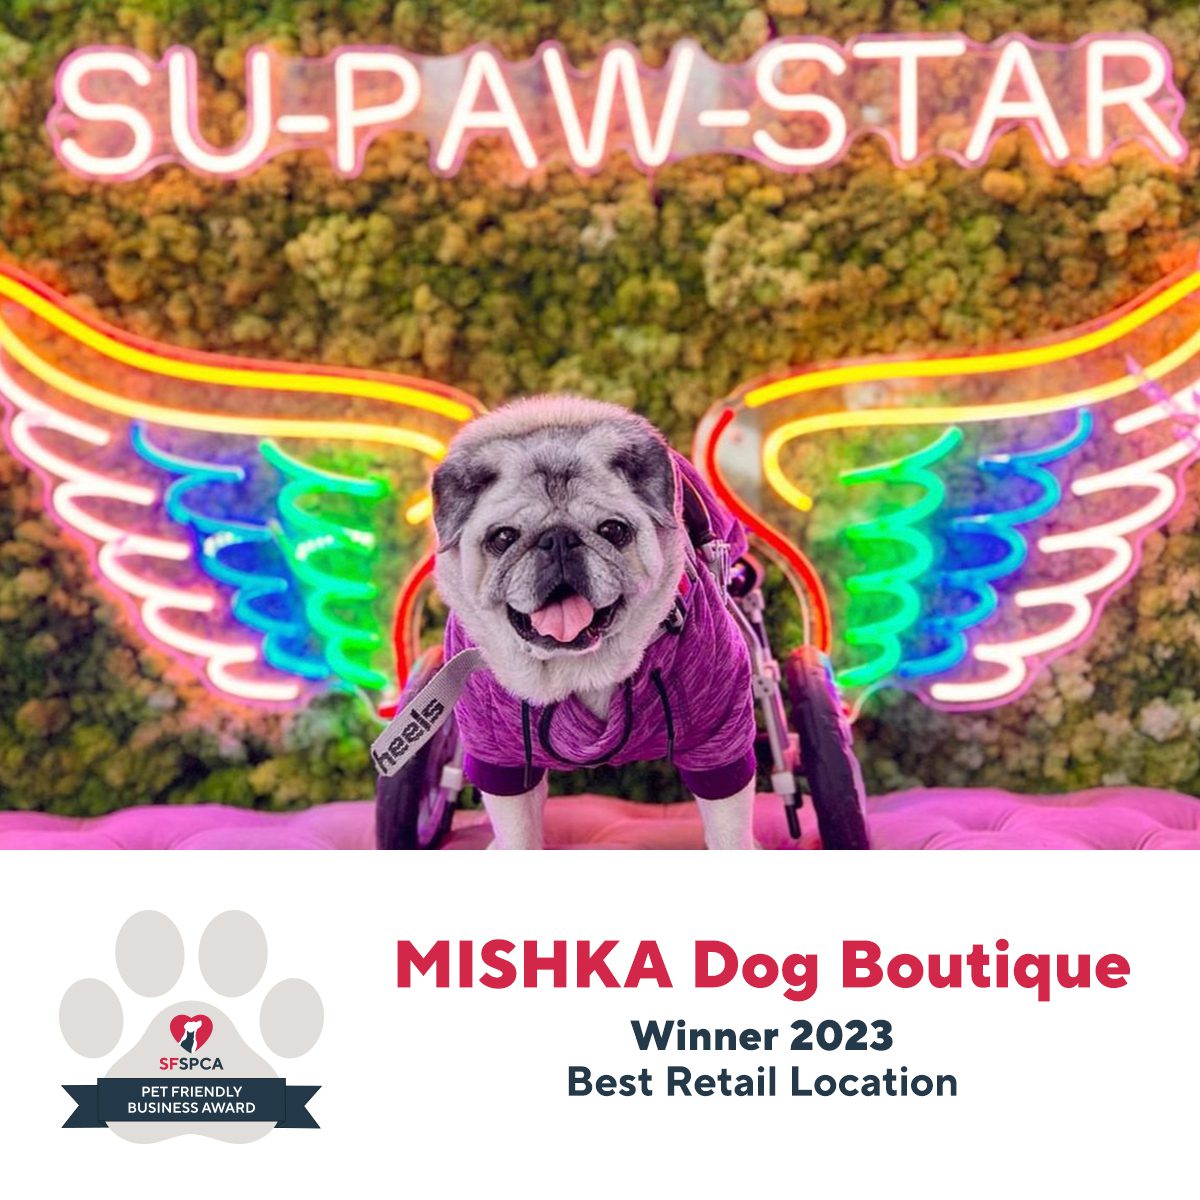 MISHKA Dog BoutiqueWinner 2023Best Retail Location